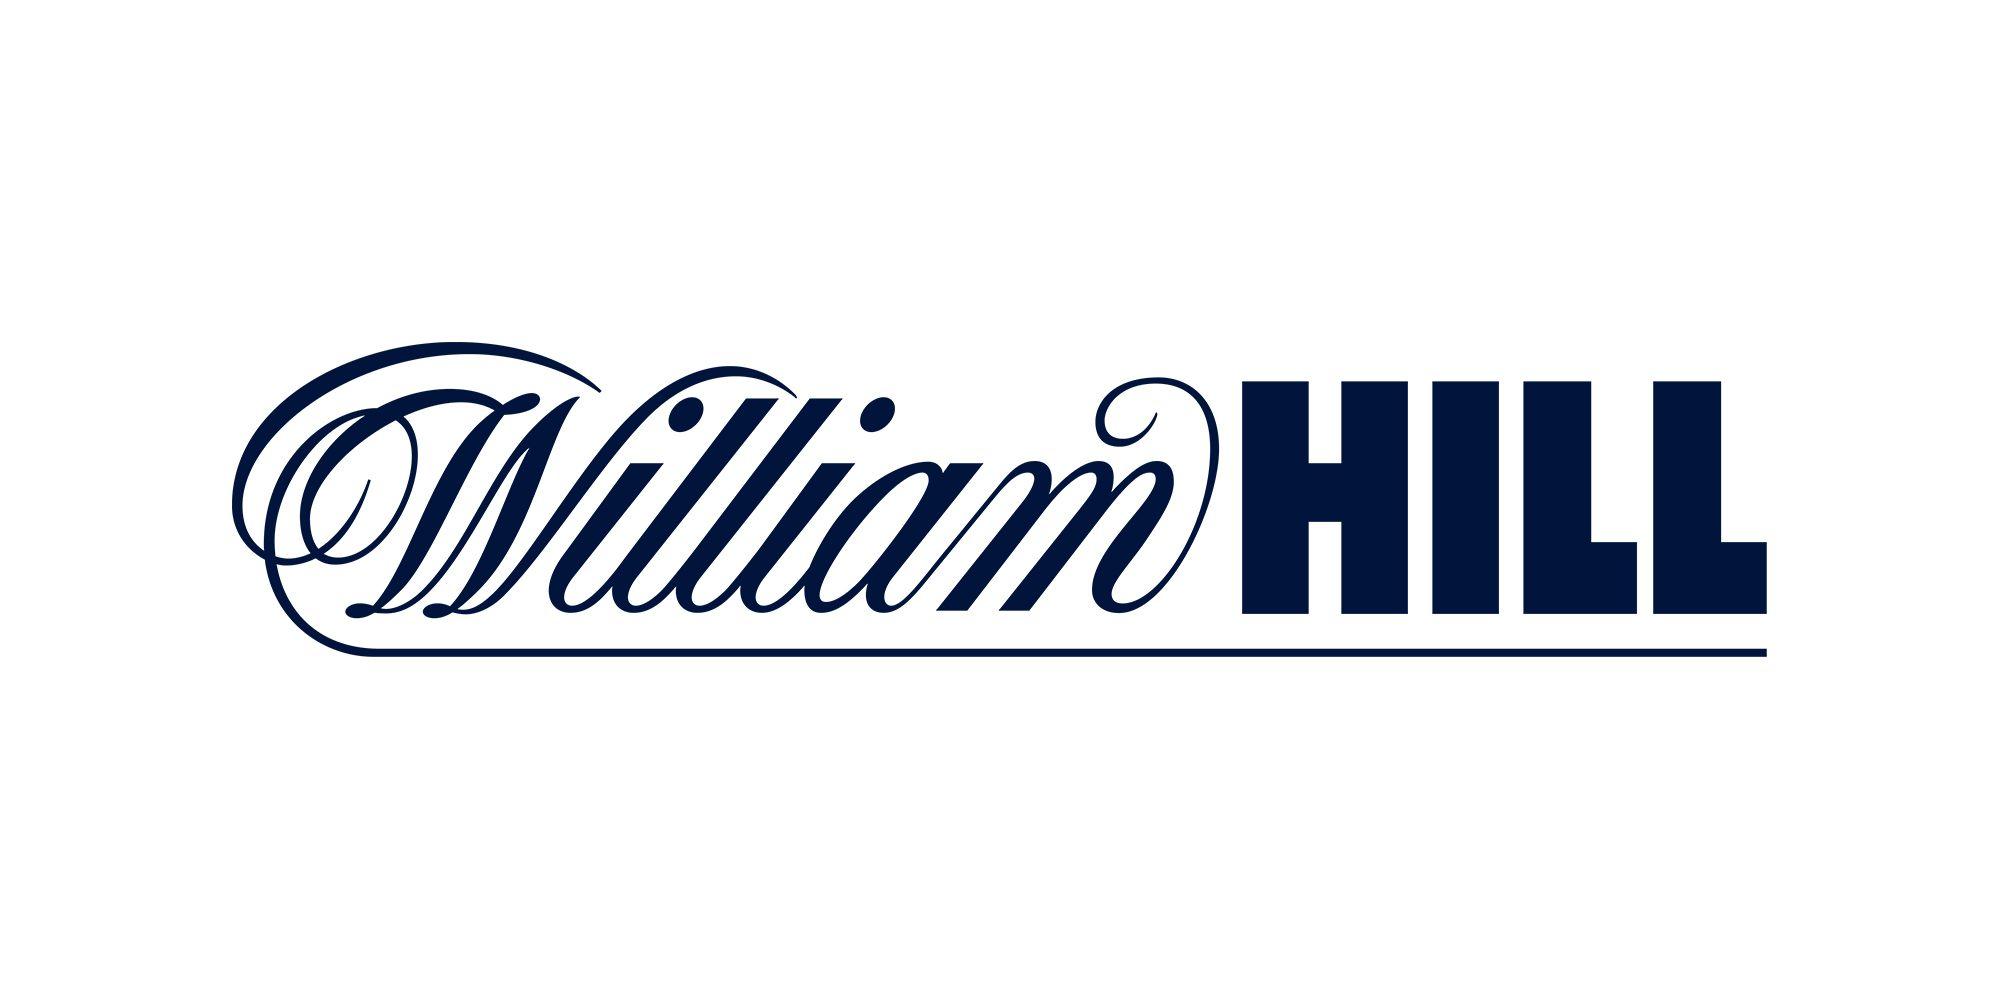 William Logo - William Hill Plc: Image library - Media